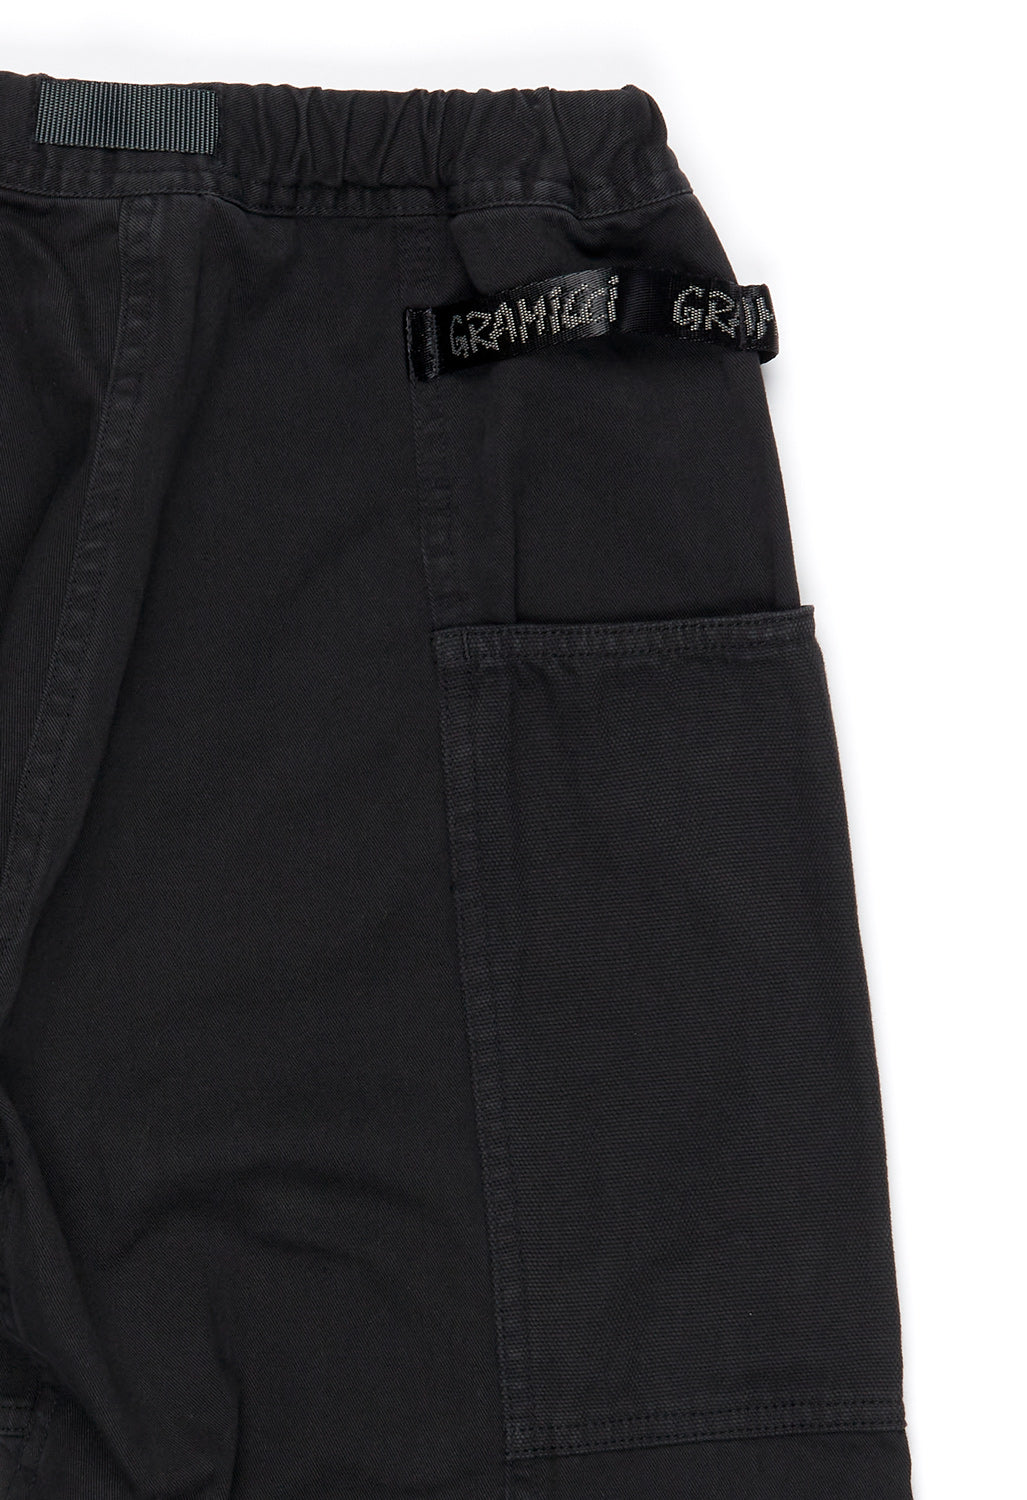 Gramicci Men's Gadget Pants - Black